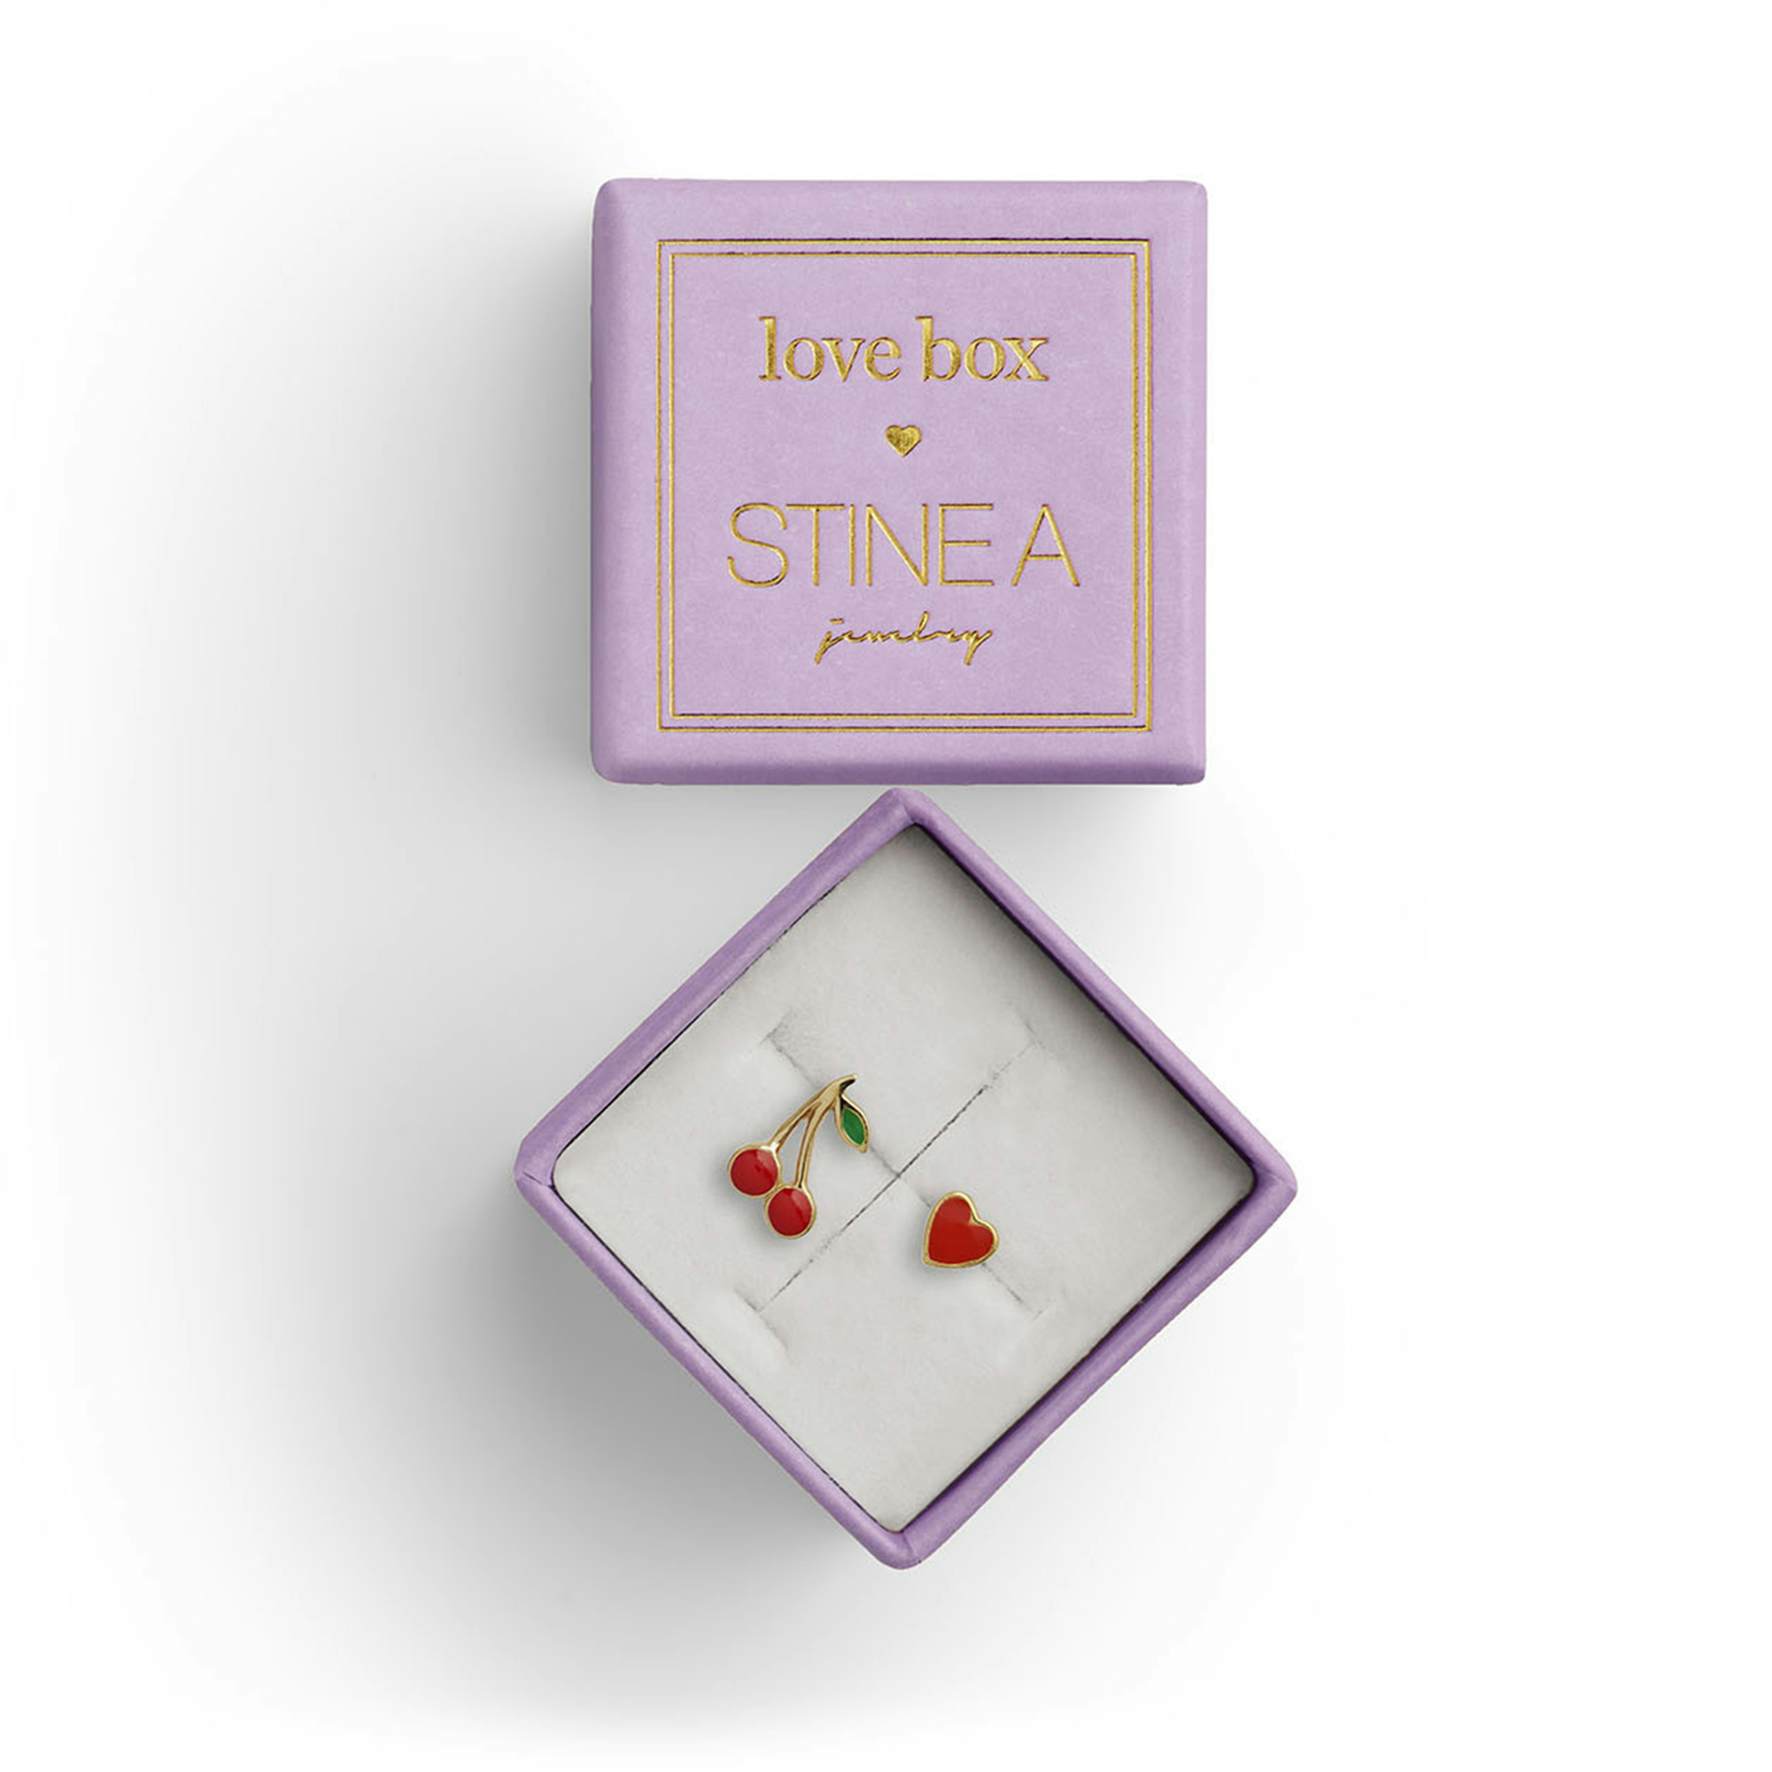 Love Box 70 von STINE A Jewelry in Vergoldet-Silber Sterling 925